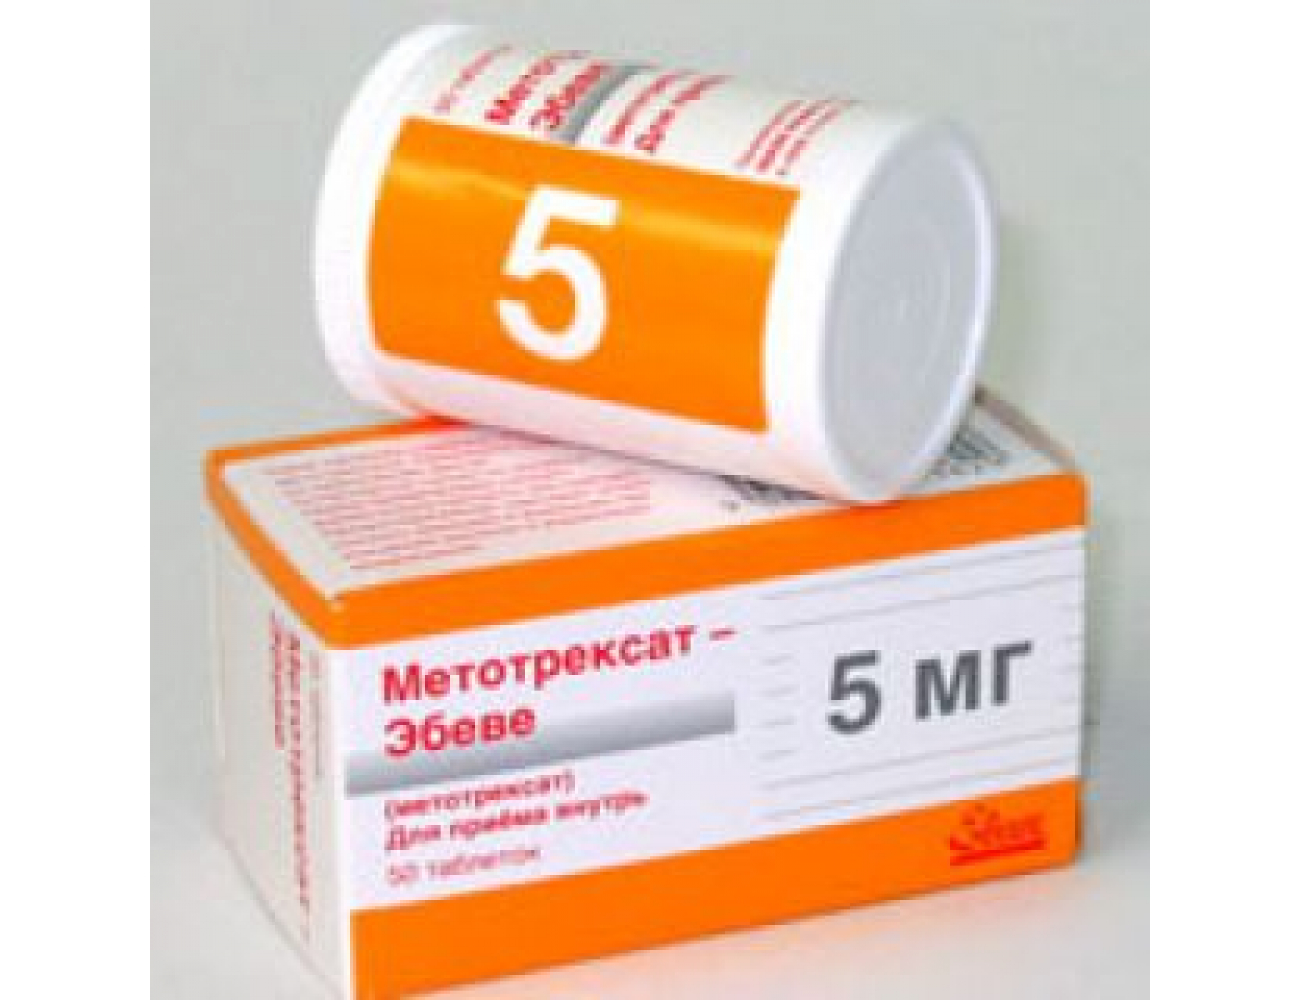 Артрит метотрексат ревматоидный укол